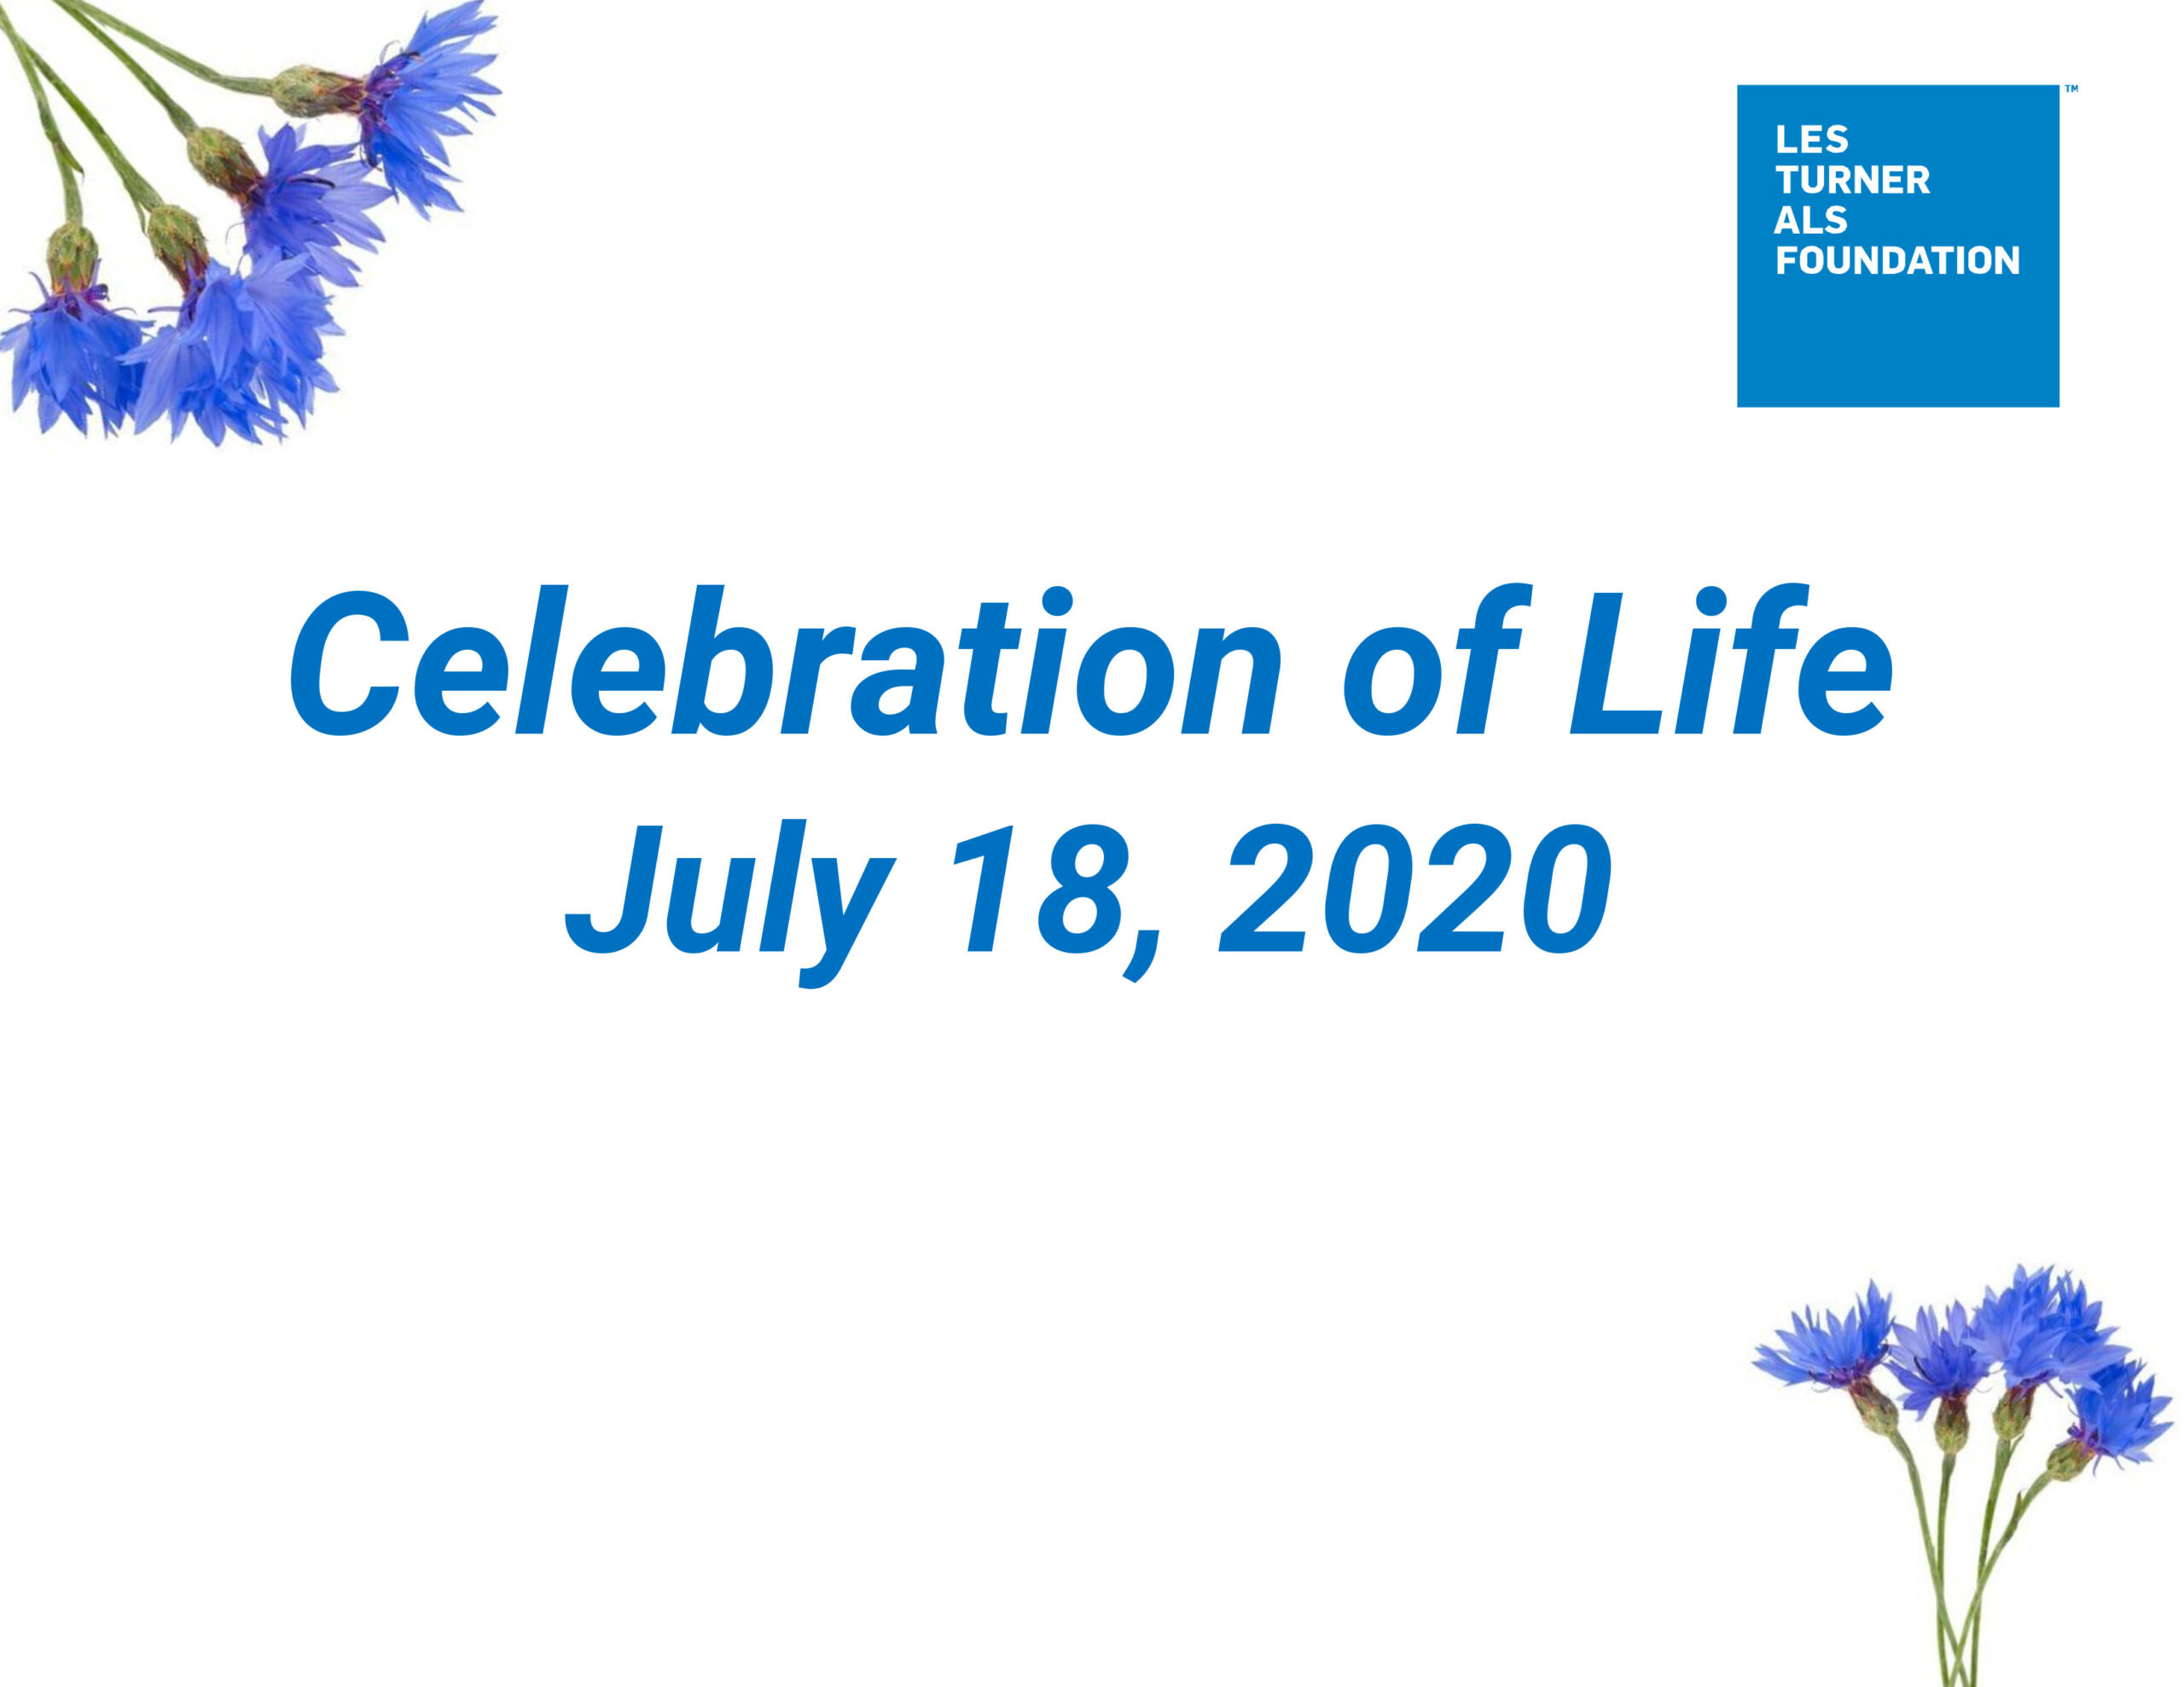 Celebration of Life Flyer_20 - Les Turner ALS Foundation